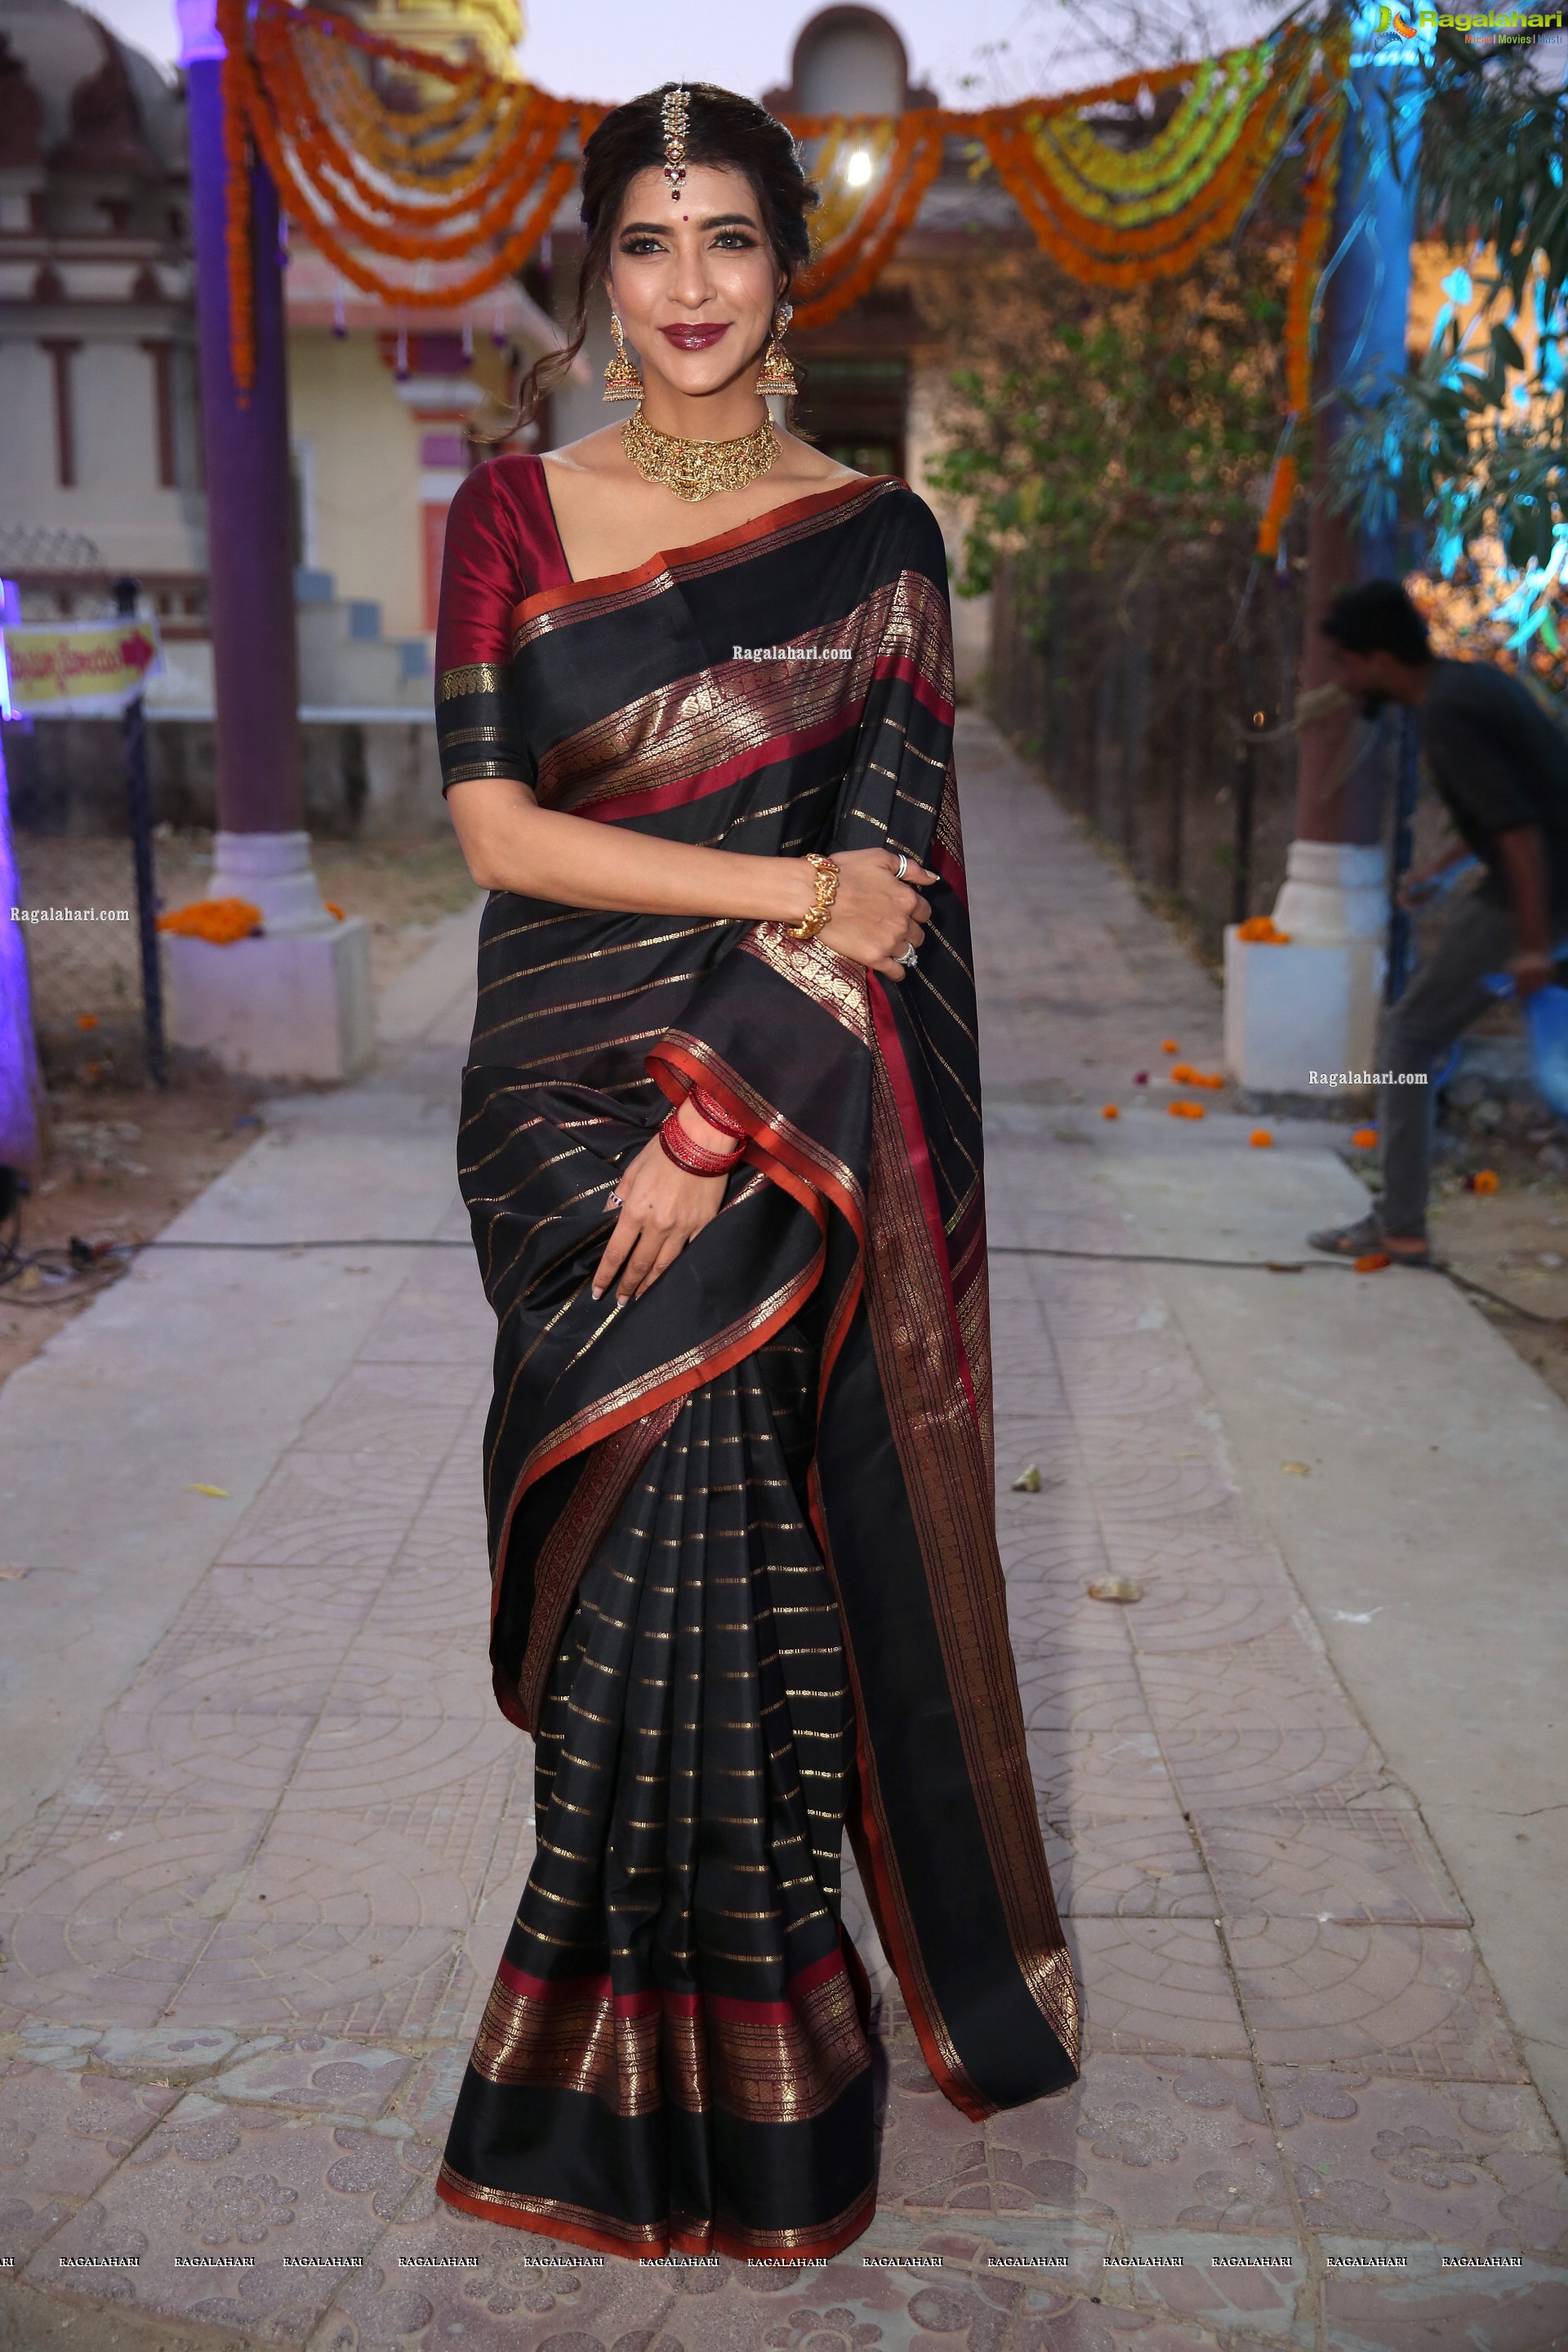 Manchu Lakshmi @ Gudi Sambaralu at Dharampuri Kshetram - HD Gallery